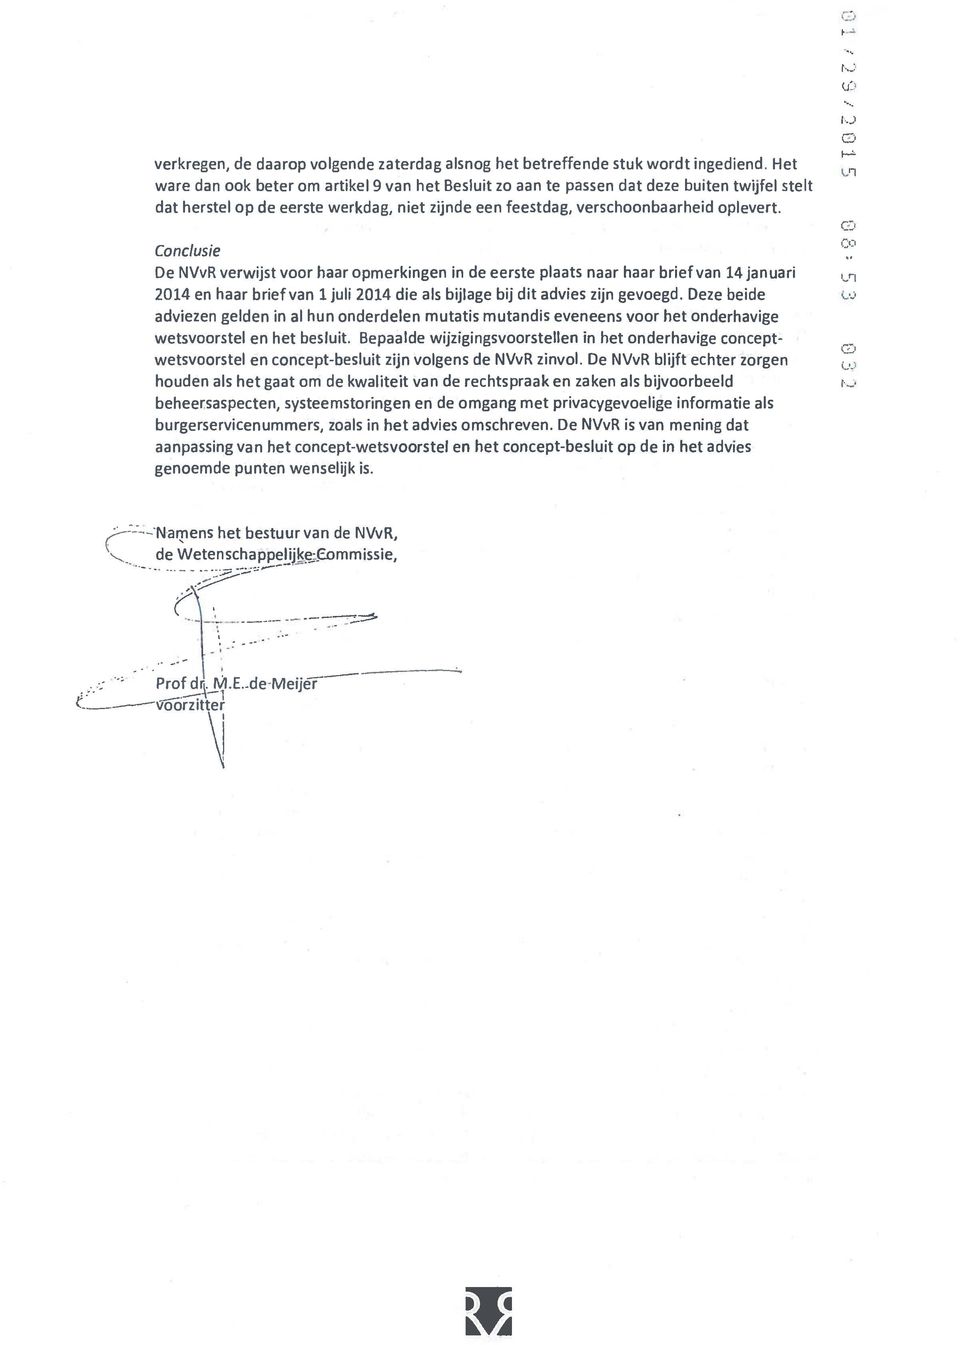 Conclusie De NVvR verwijst voor haar opmerkingen in de eerste plaats naar haar brief van 14januari 2014 en haar brief van 1juli2014 die als bijlage bij dit advies zijn gevoegd.